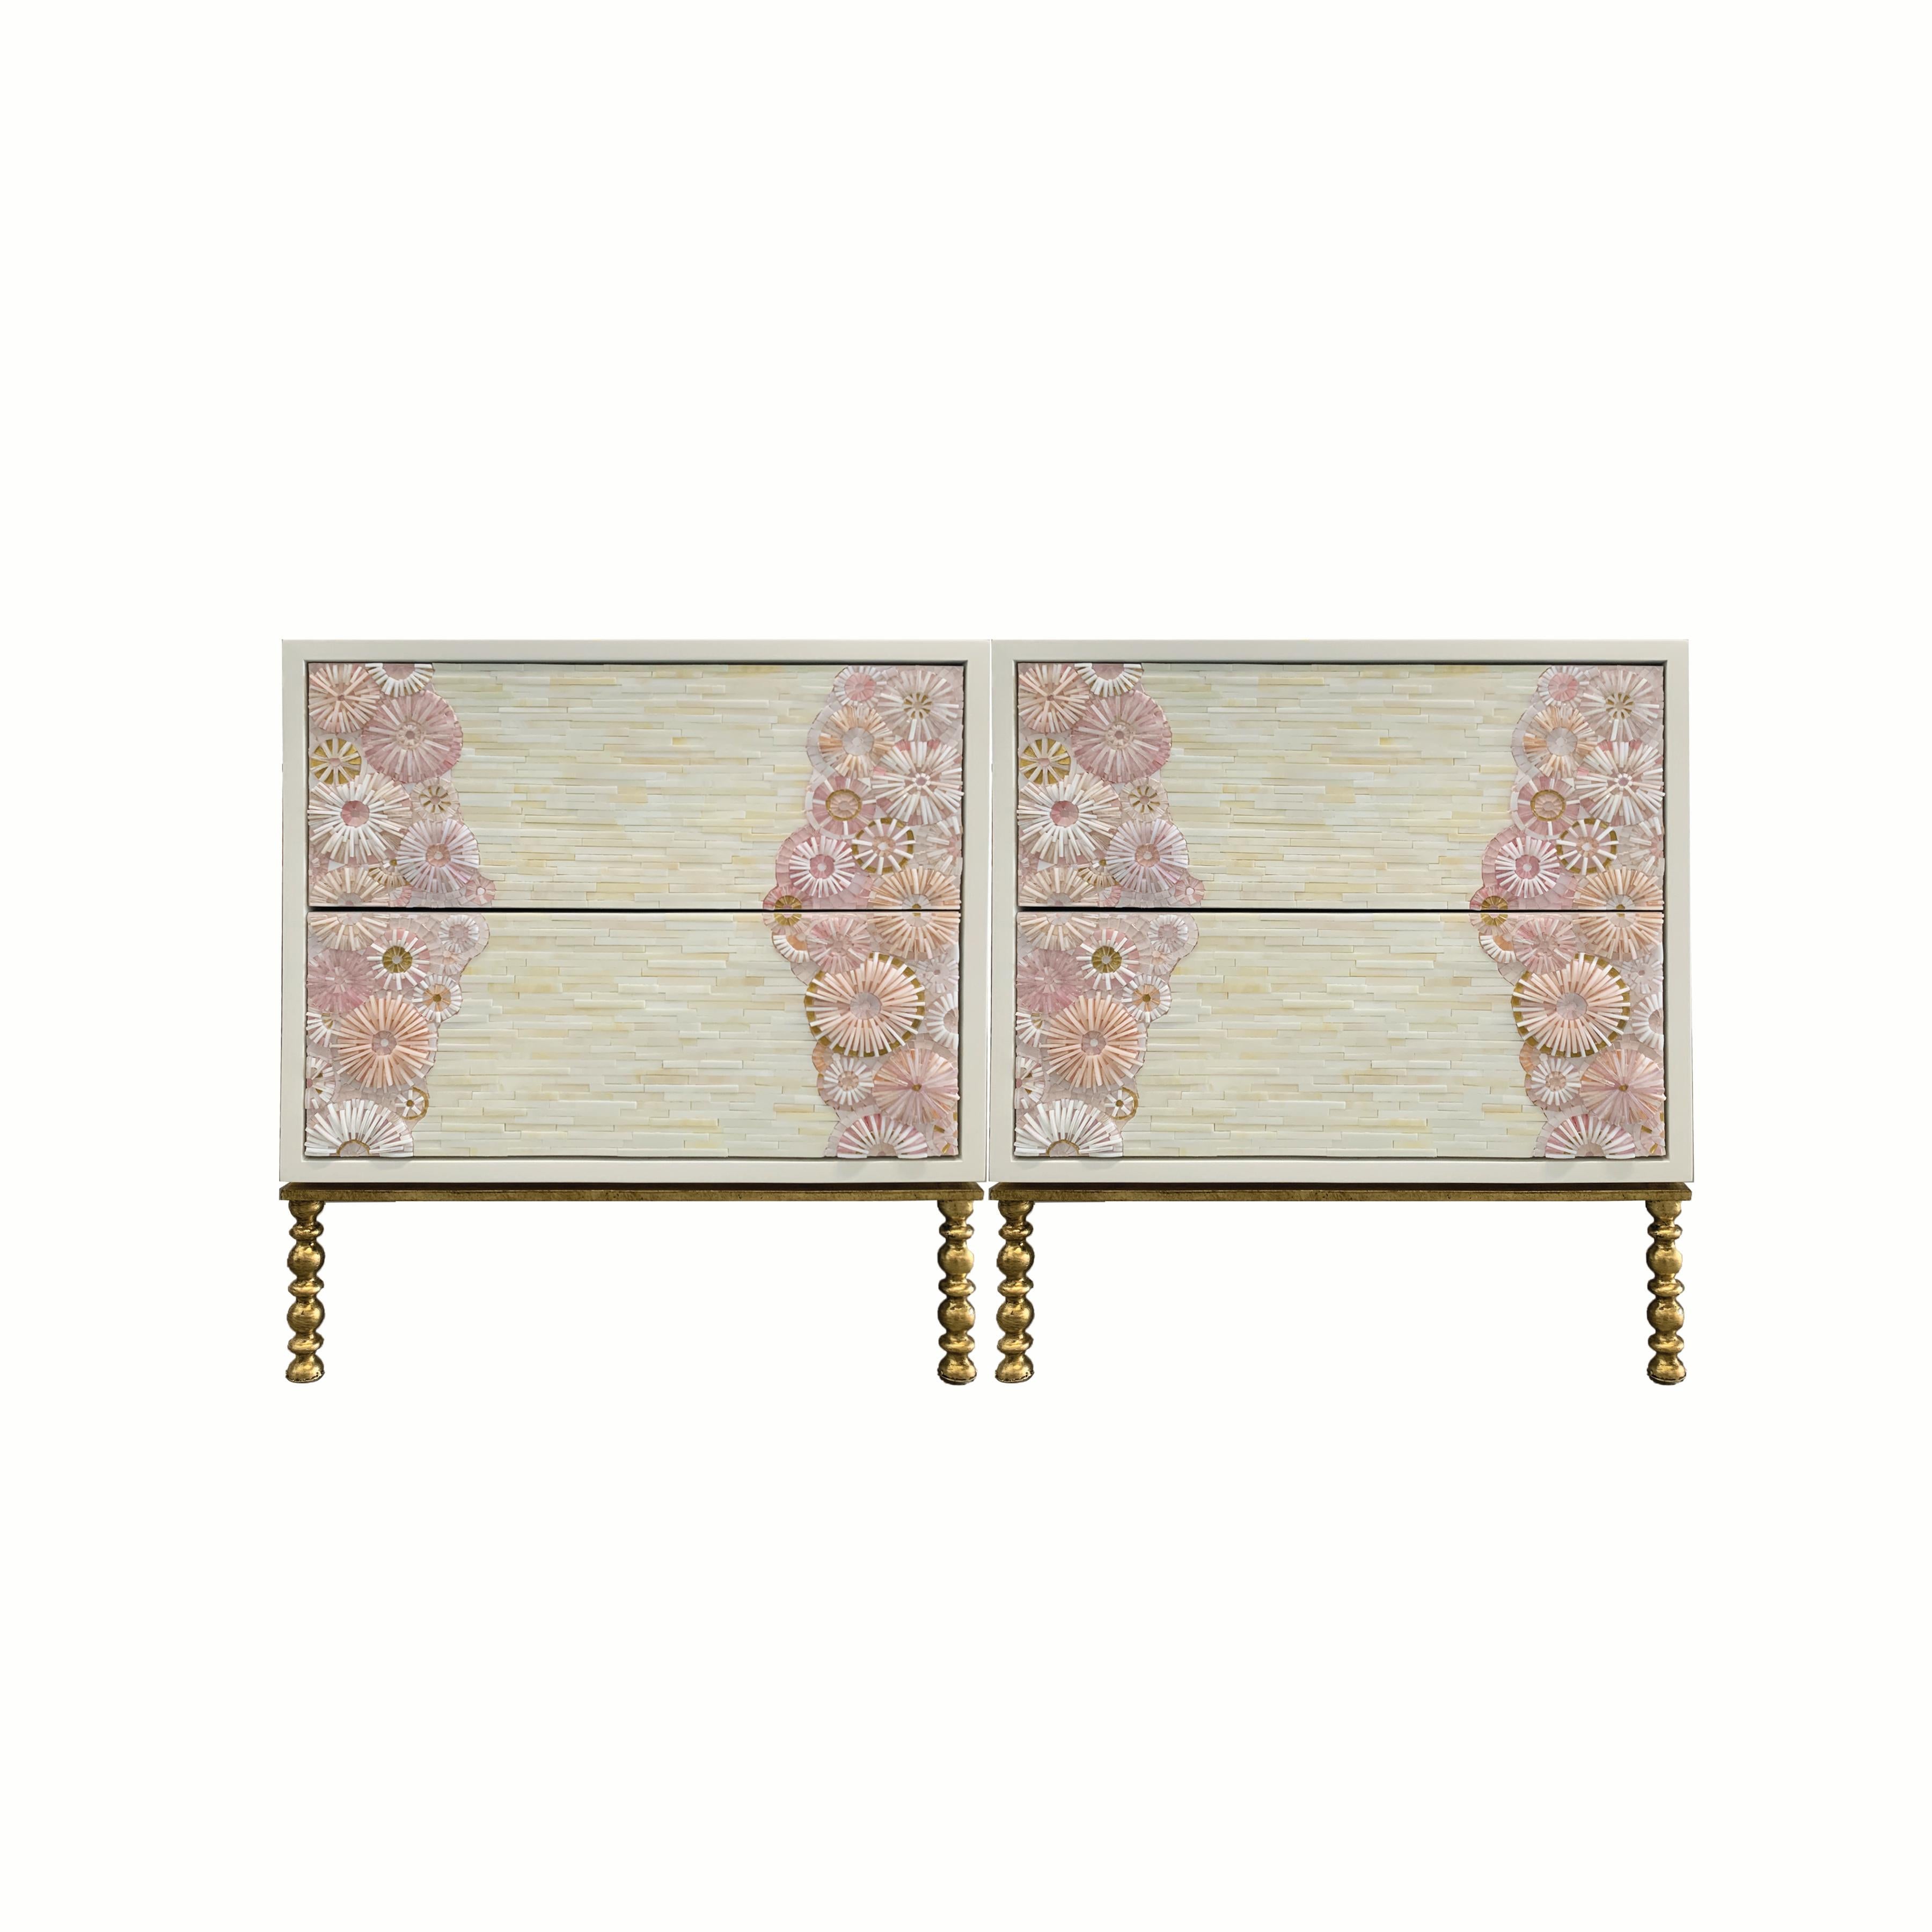 Der Nachttisch Blüte von Ercole Home hat eine Front mit 2 Schubladen und ist aus weiß lackiertem Holz.
Handgeschliffenes Glasmosaik in verschiedenen Gold-, Rosa-, Weiß- und Elfenbeintönen ziert die Oberfläche im Blossom- und